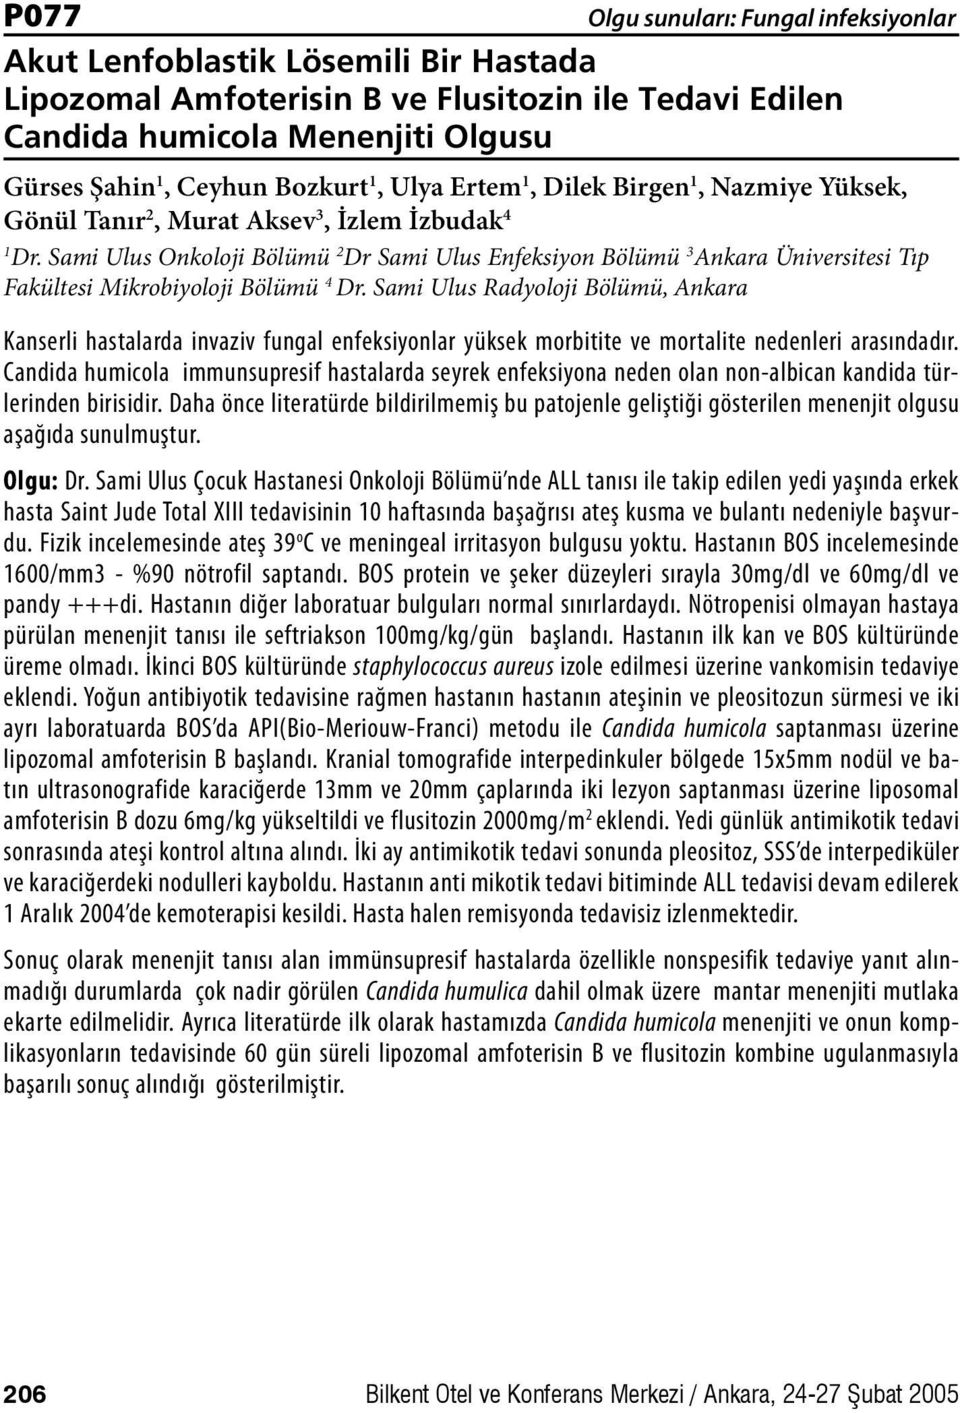 Sami Ulus Radyoloji Bölümü, Ankara Kanserli hastalarda invaziv fungal enfeksiyonlar yüksek morbitite ve mortalite nedenleri arasındadır.